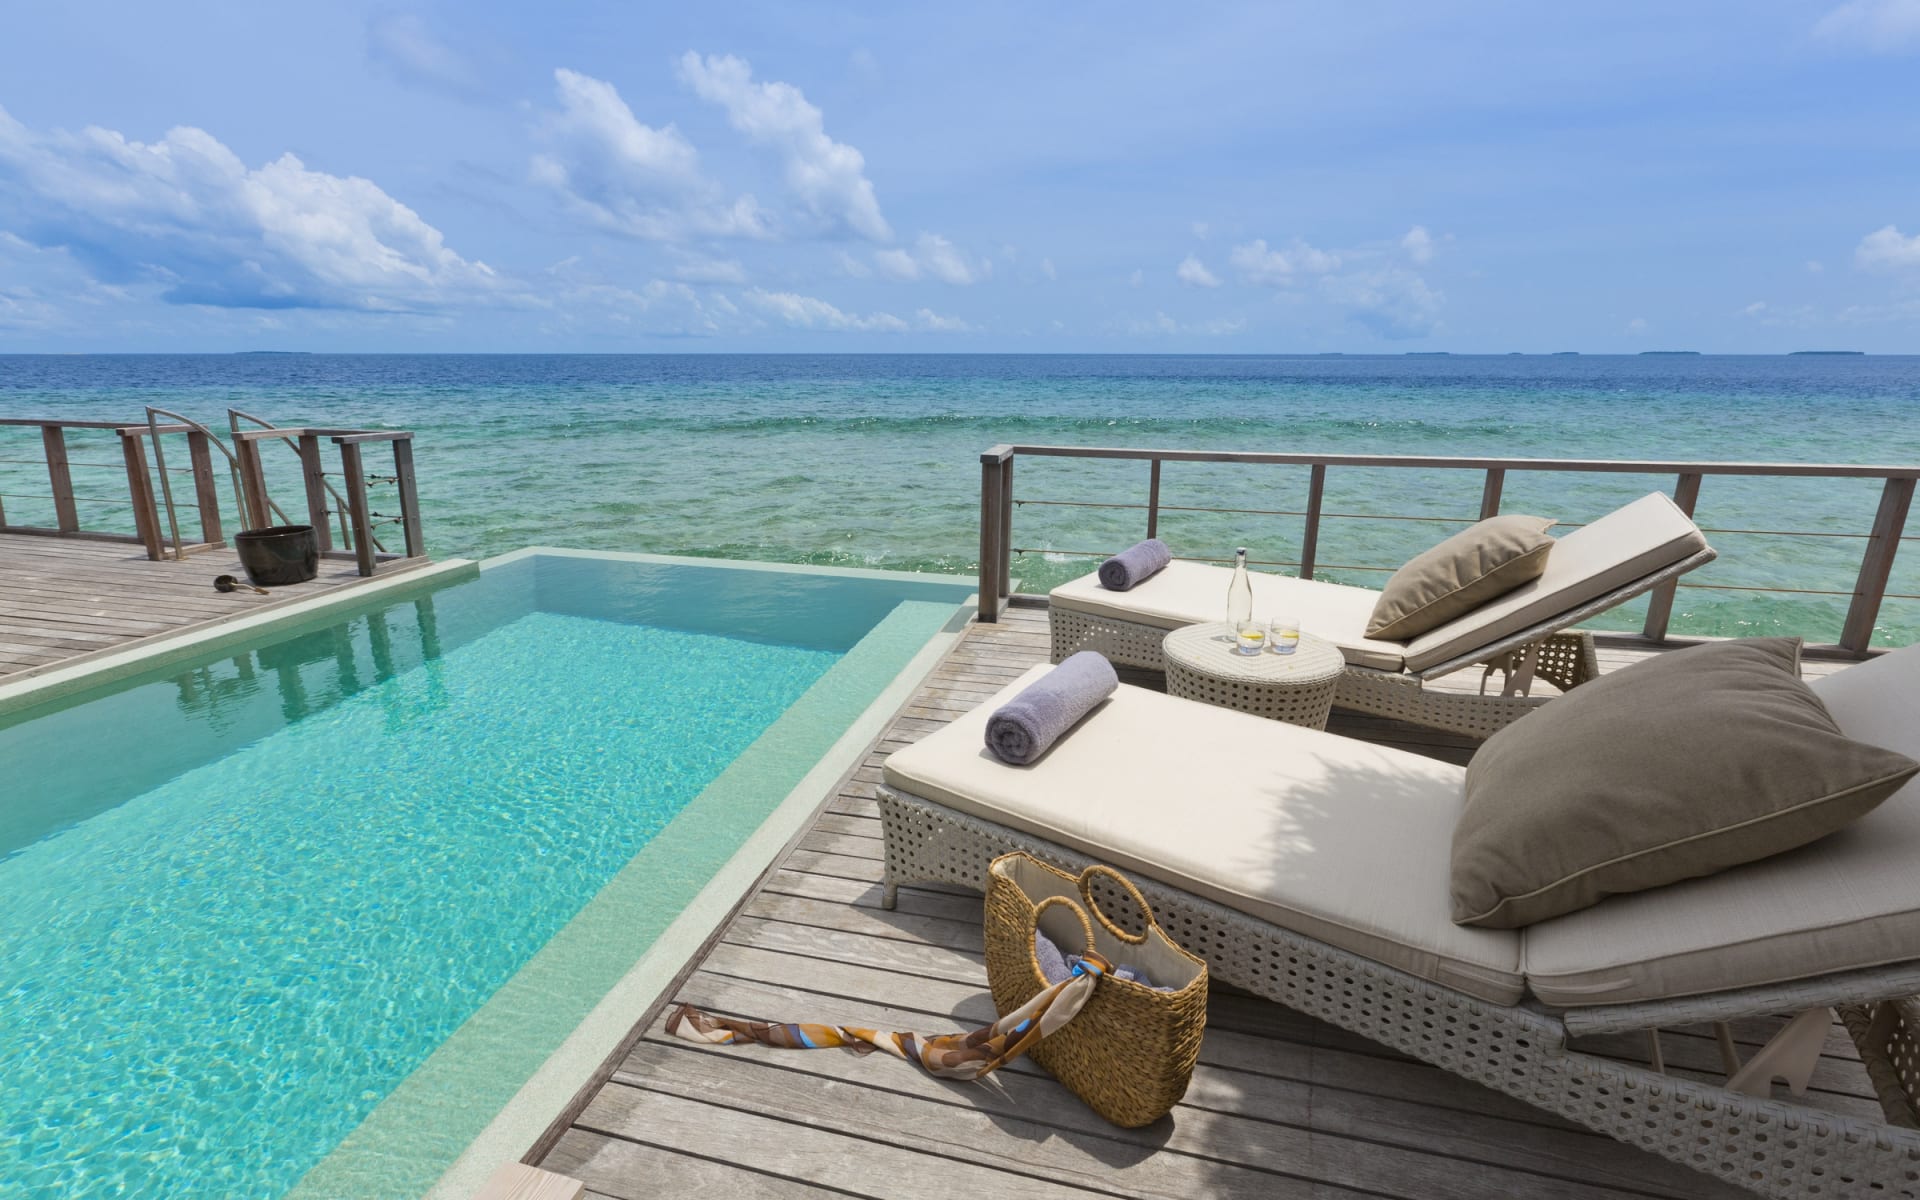 ocean-pavilion-terrace-pool-dusit-thani-maldives_wqtdi7